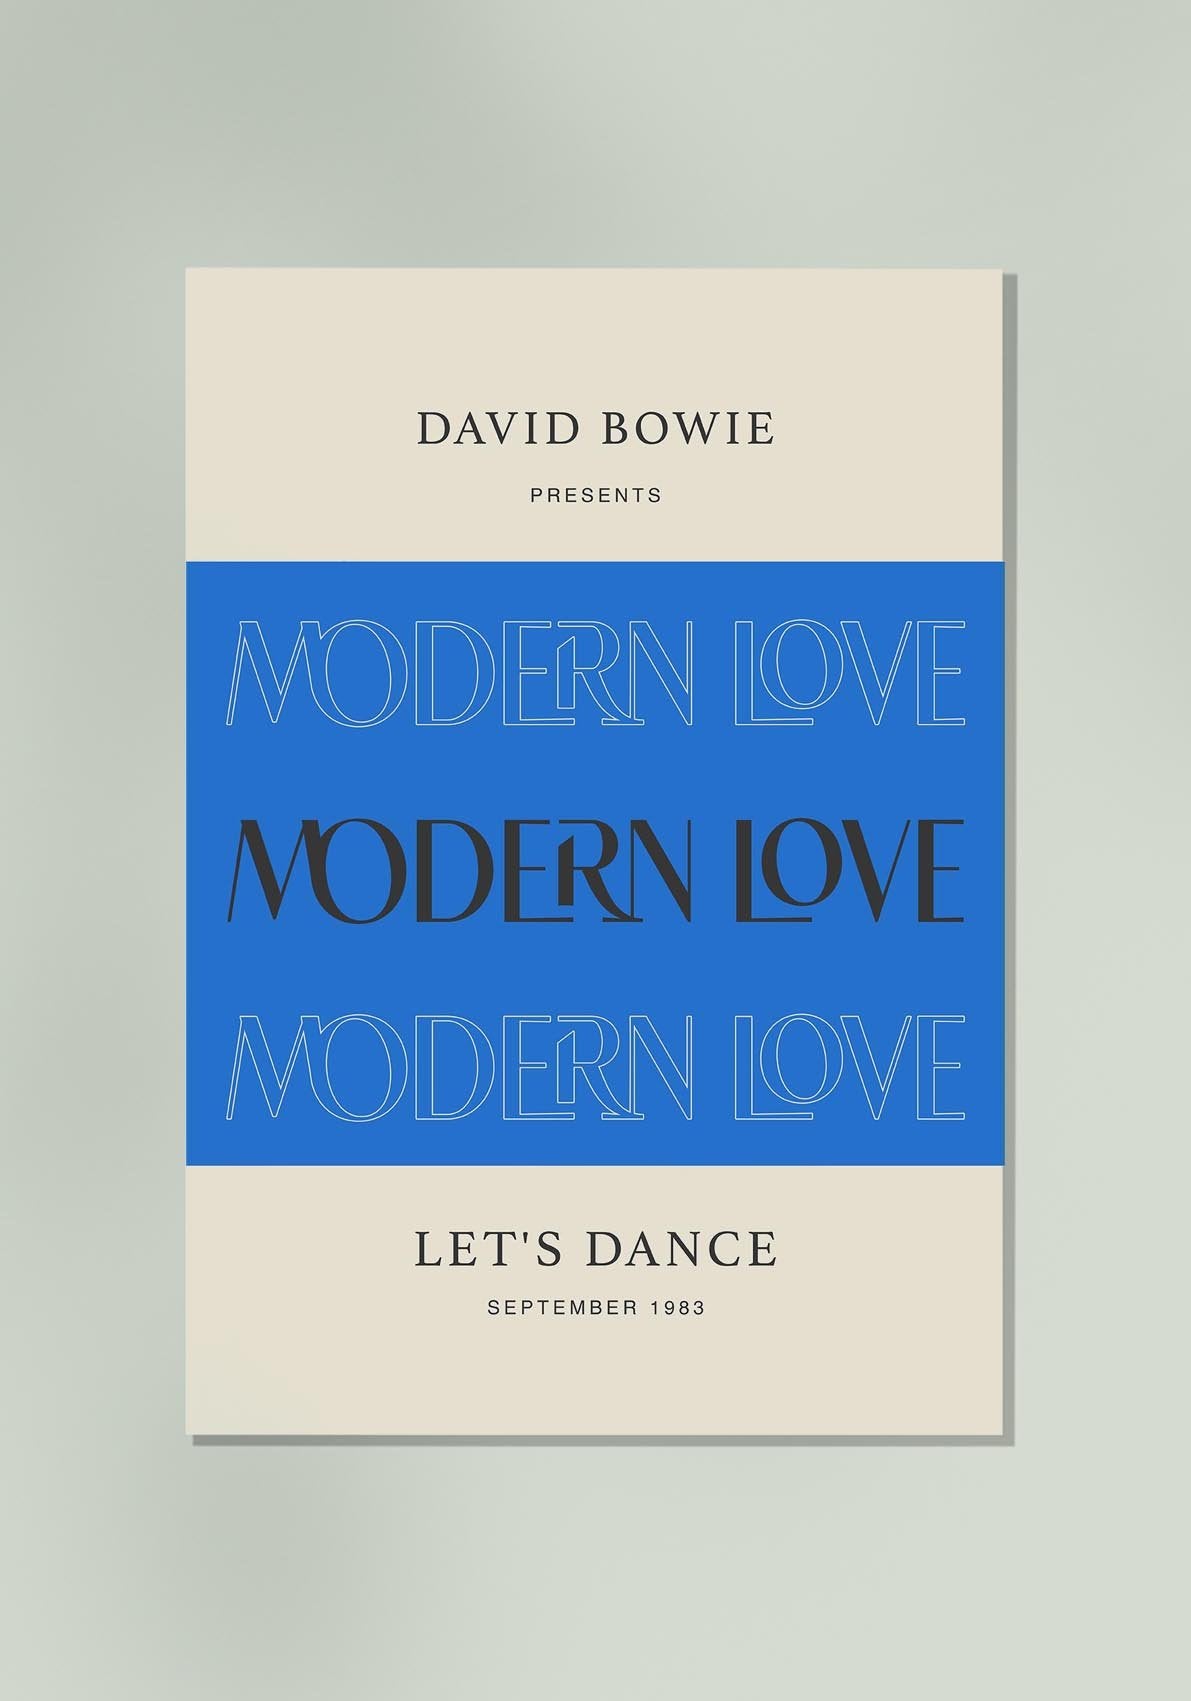 Modern Love by David Bowie